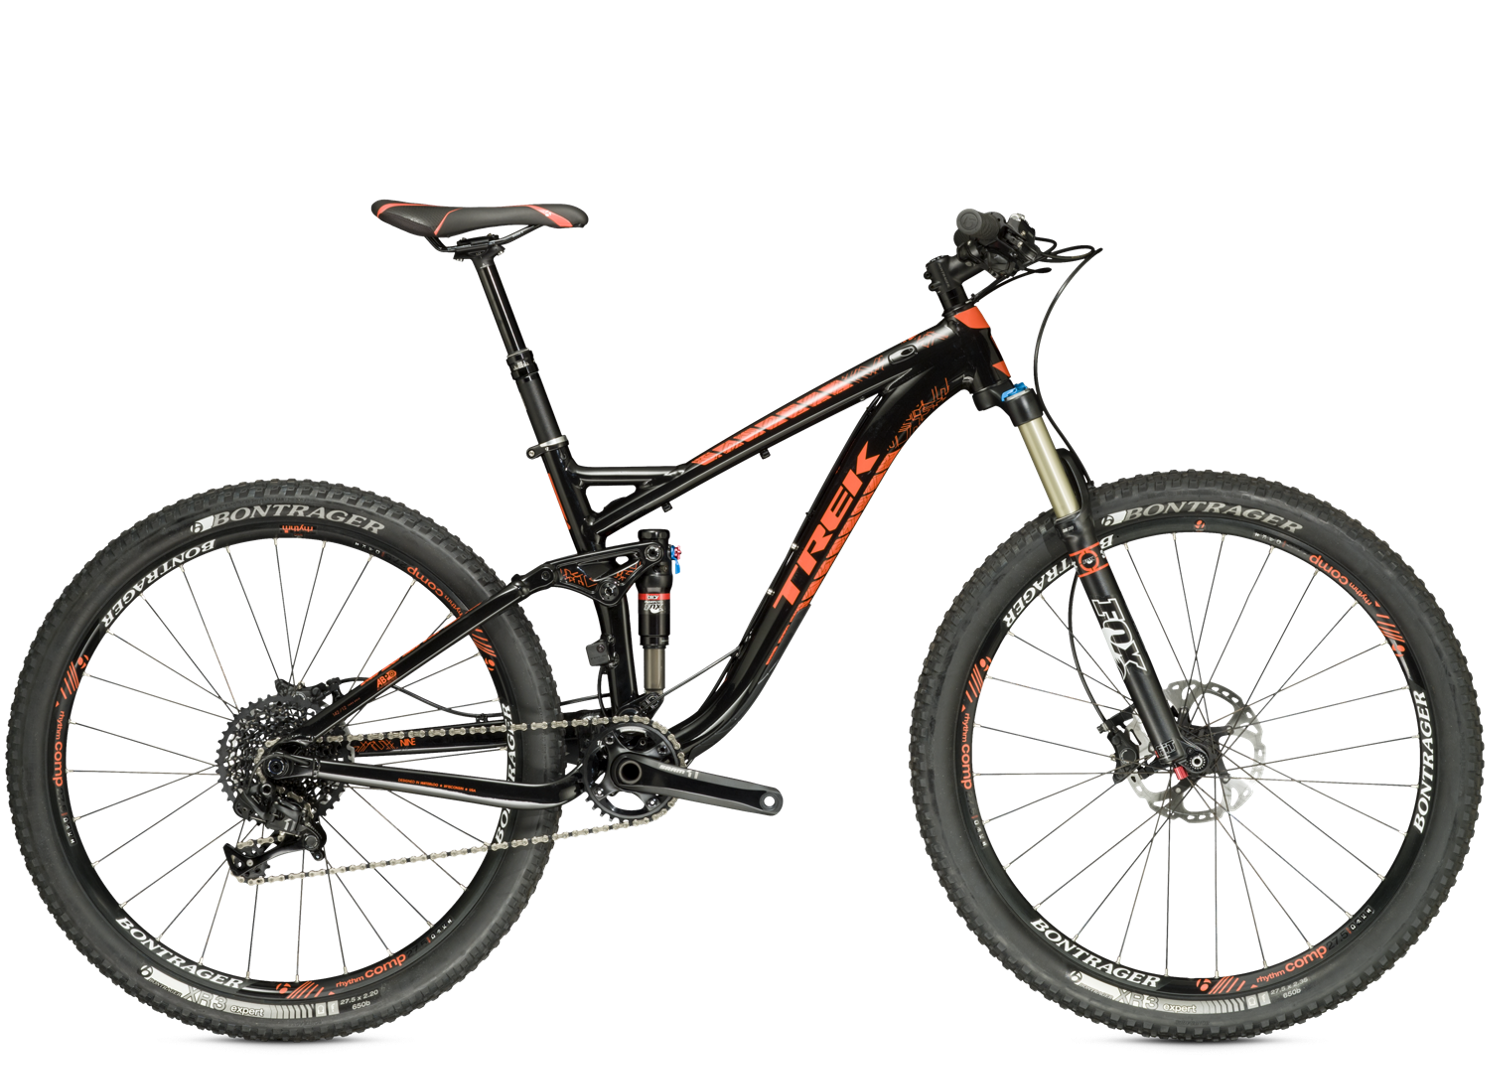 Mineraalwater Oorzaak schaal 2015 Fuel EX 9 27.5 - Bike Archive - Trek Bicycle